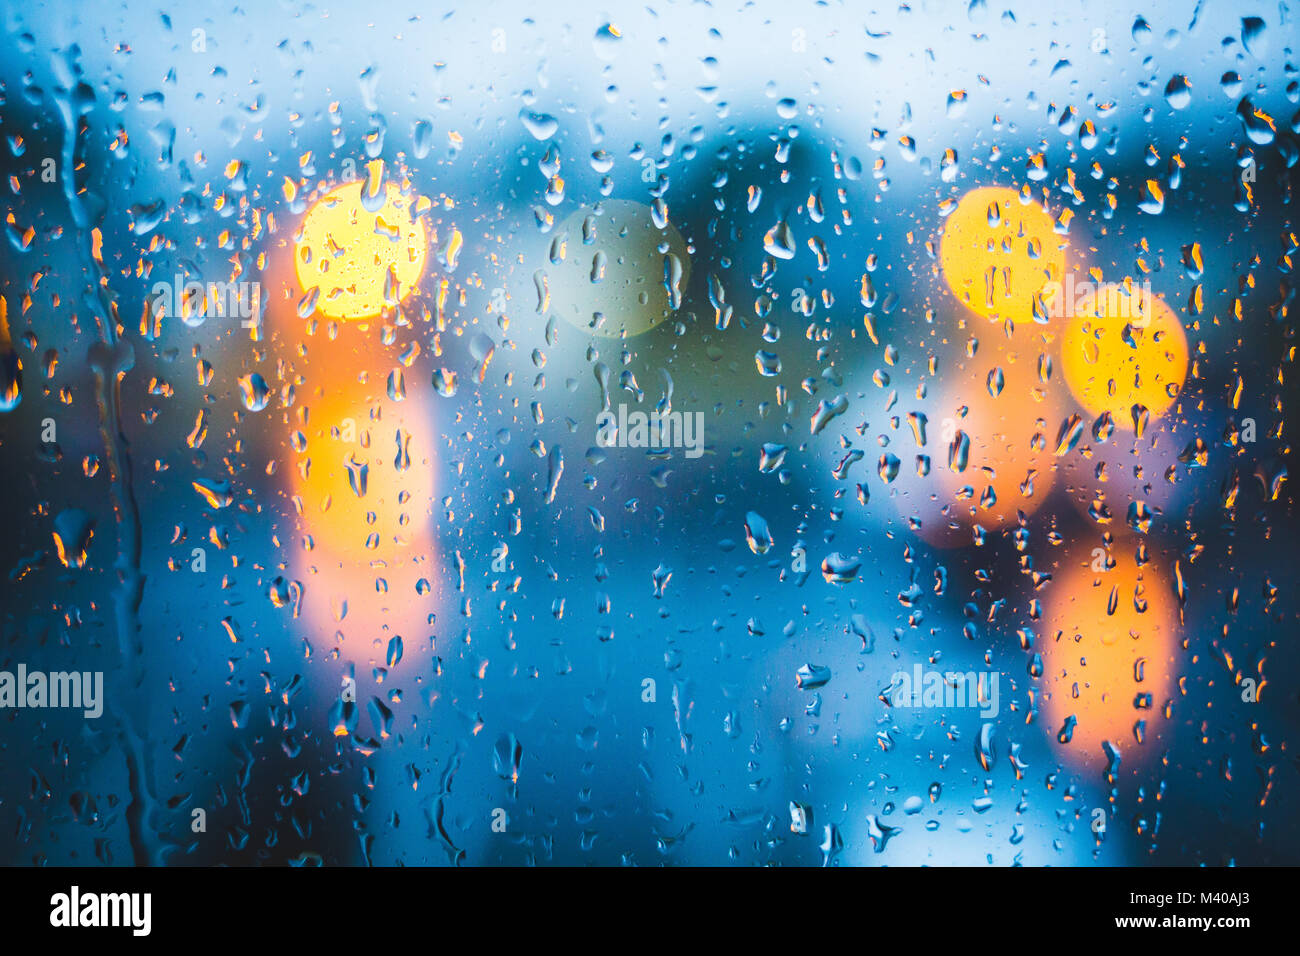 Regen fällt auf Fenster. Ruhigen Abend oder in der Nacht zu Hause, wenn draussen geregnet. Wassertropfen auf Glas. Oberfläche der nassen Glas. Wasser spritzen. City lights Bo Stockfoto